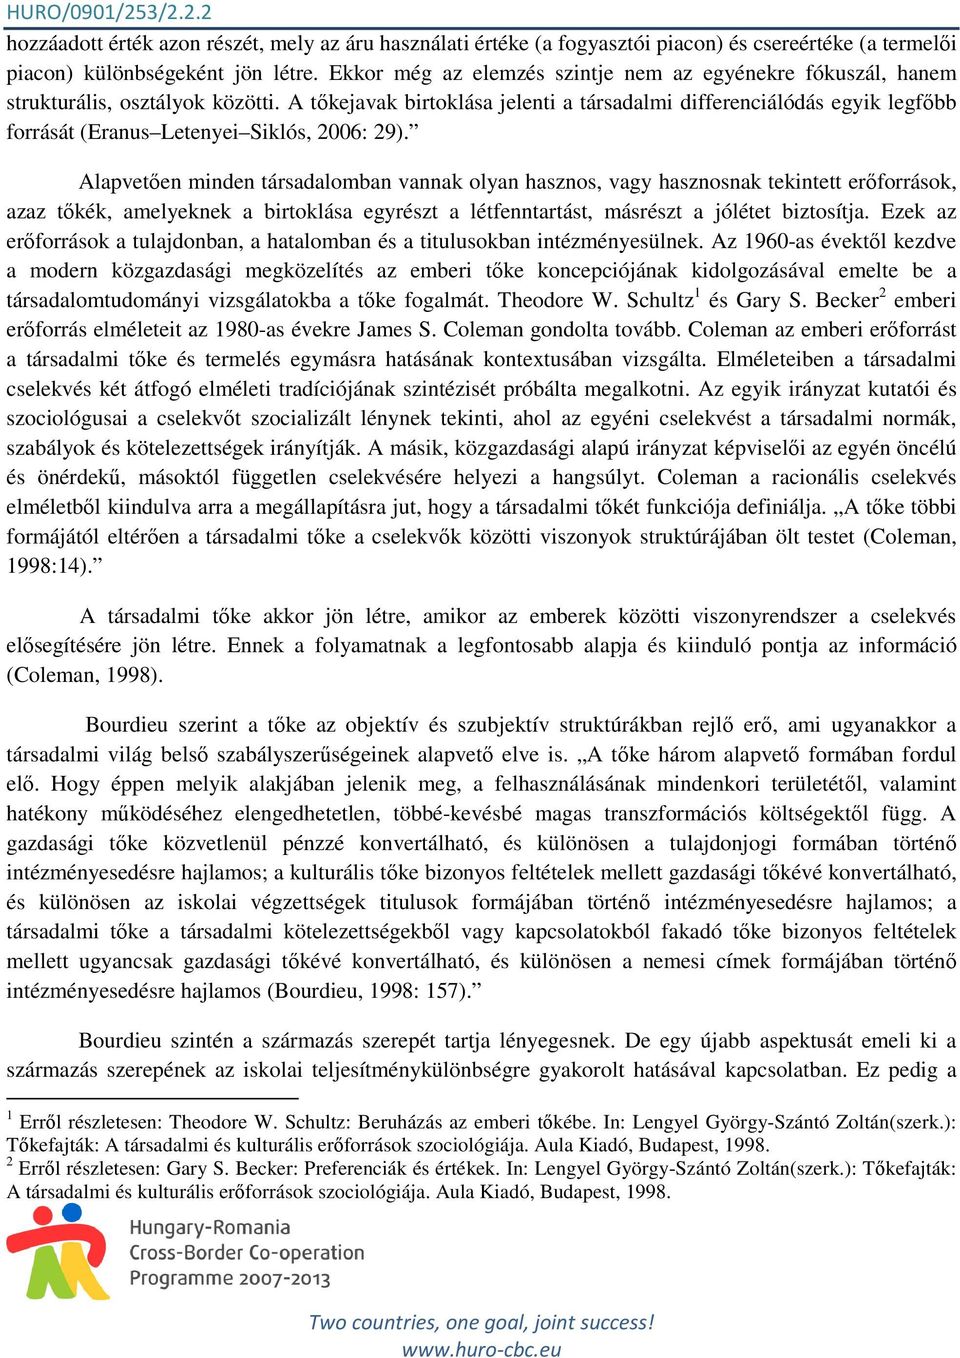 A tıkejavak birtoklása jelenti a társadalmi differenciálódás egyik legfıbb forrását (Eranus Letenyei Siklós, 2006: 29).